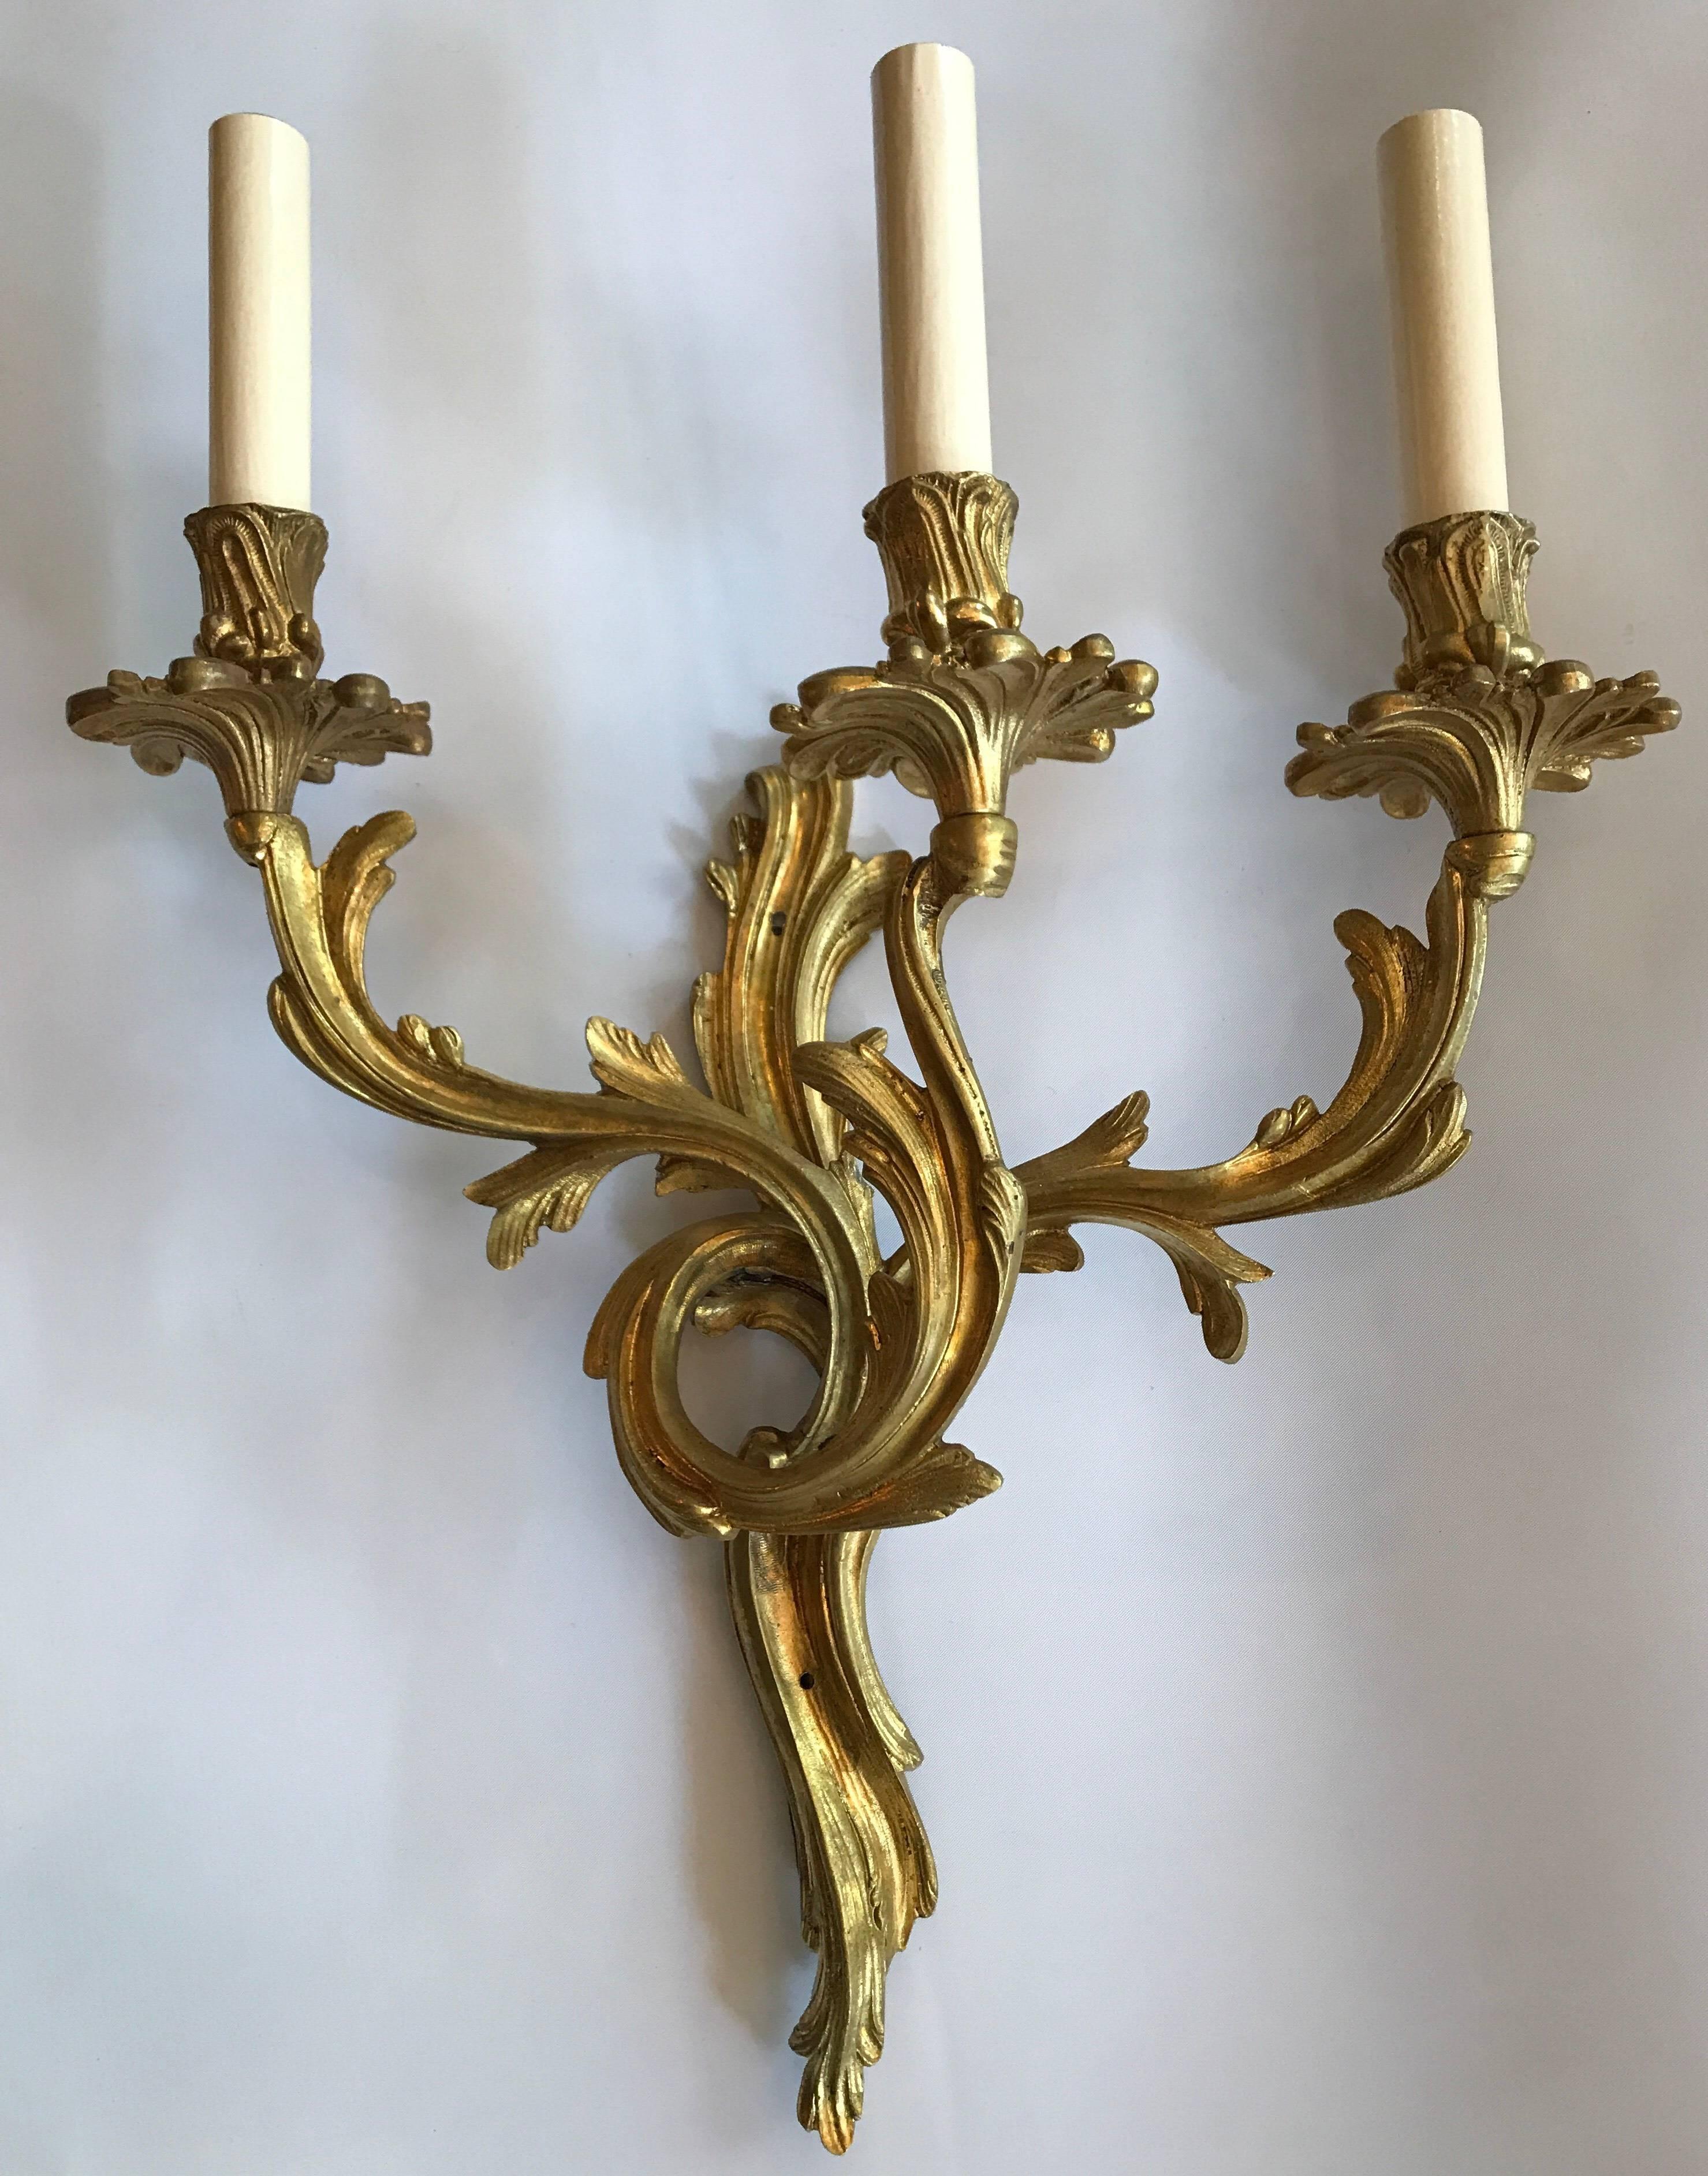 Paire d'appliques à trois lumières en bronze doré de style Louis XVI datant des années 1920.

Mesures :
Hauteur 20